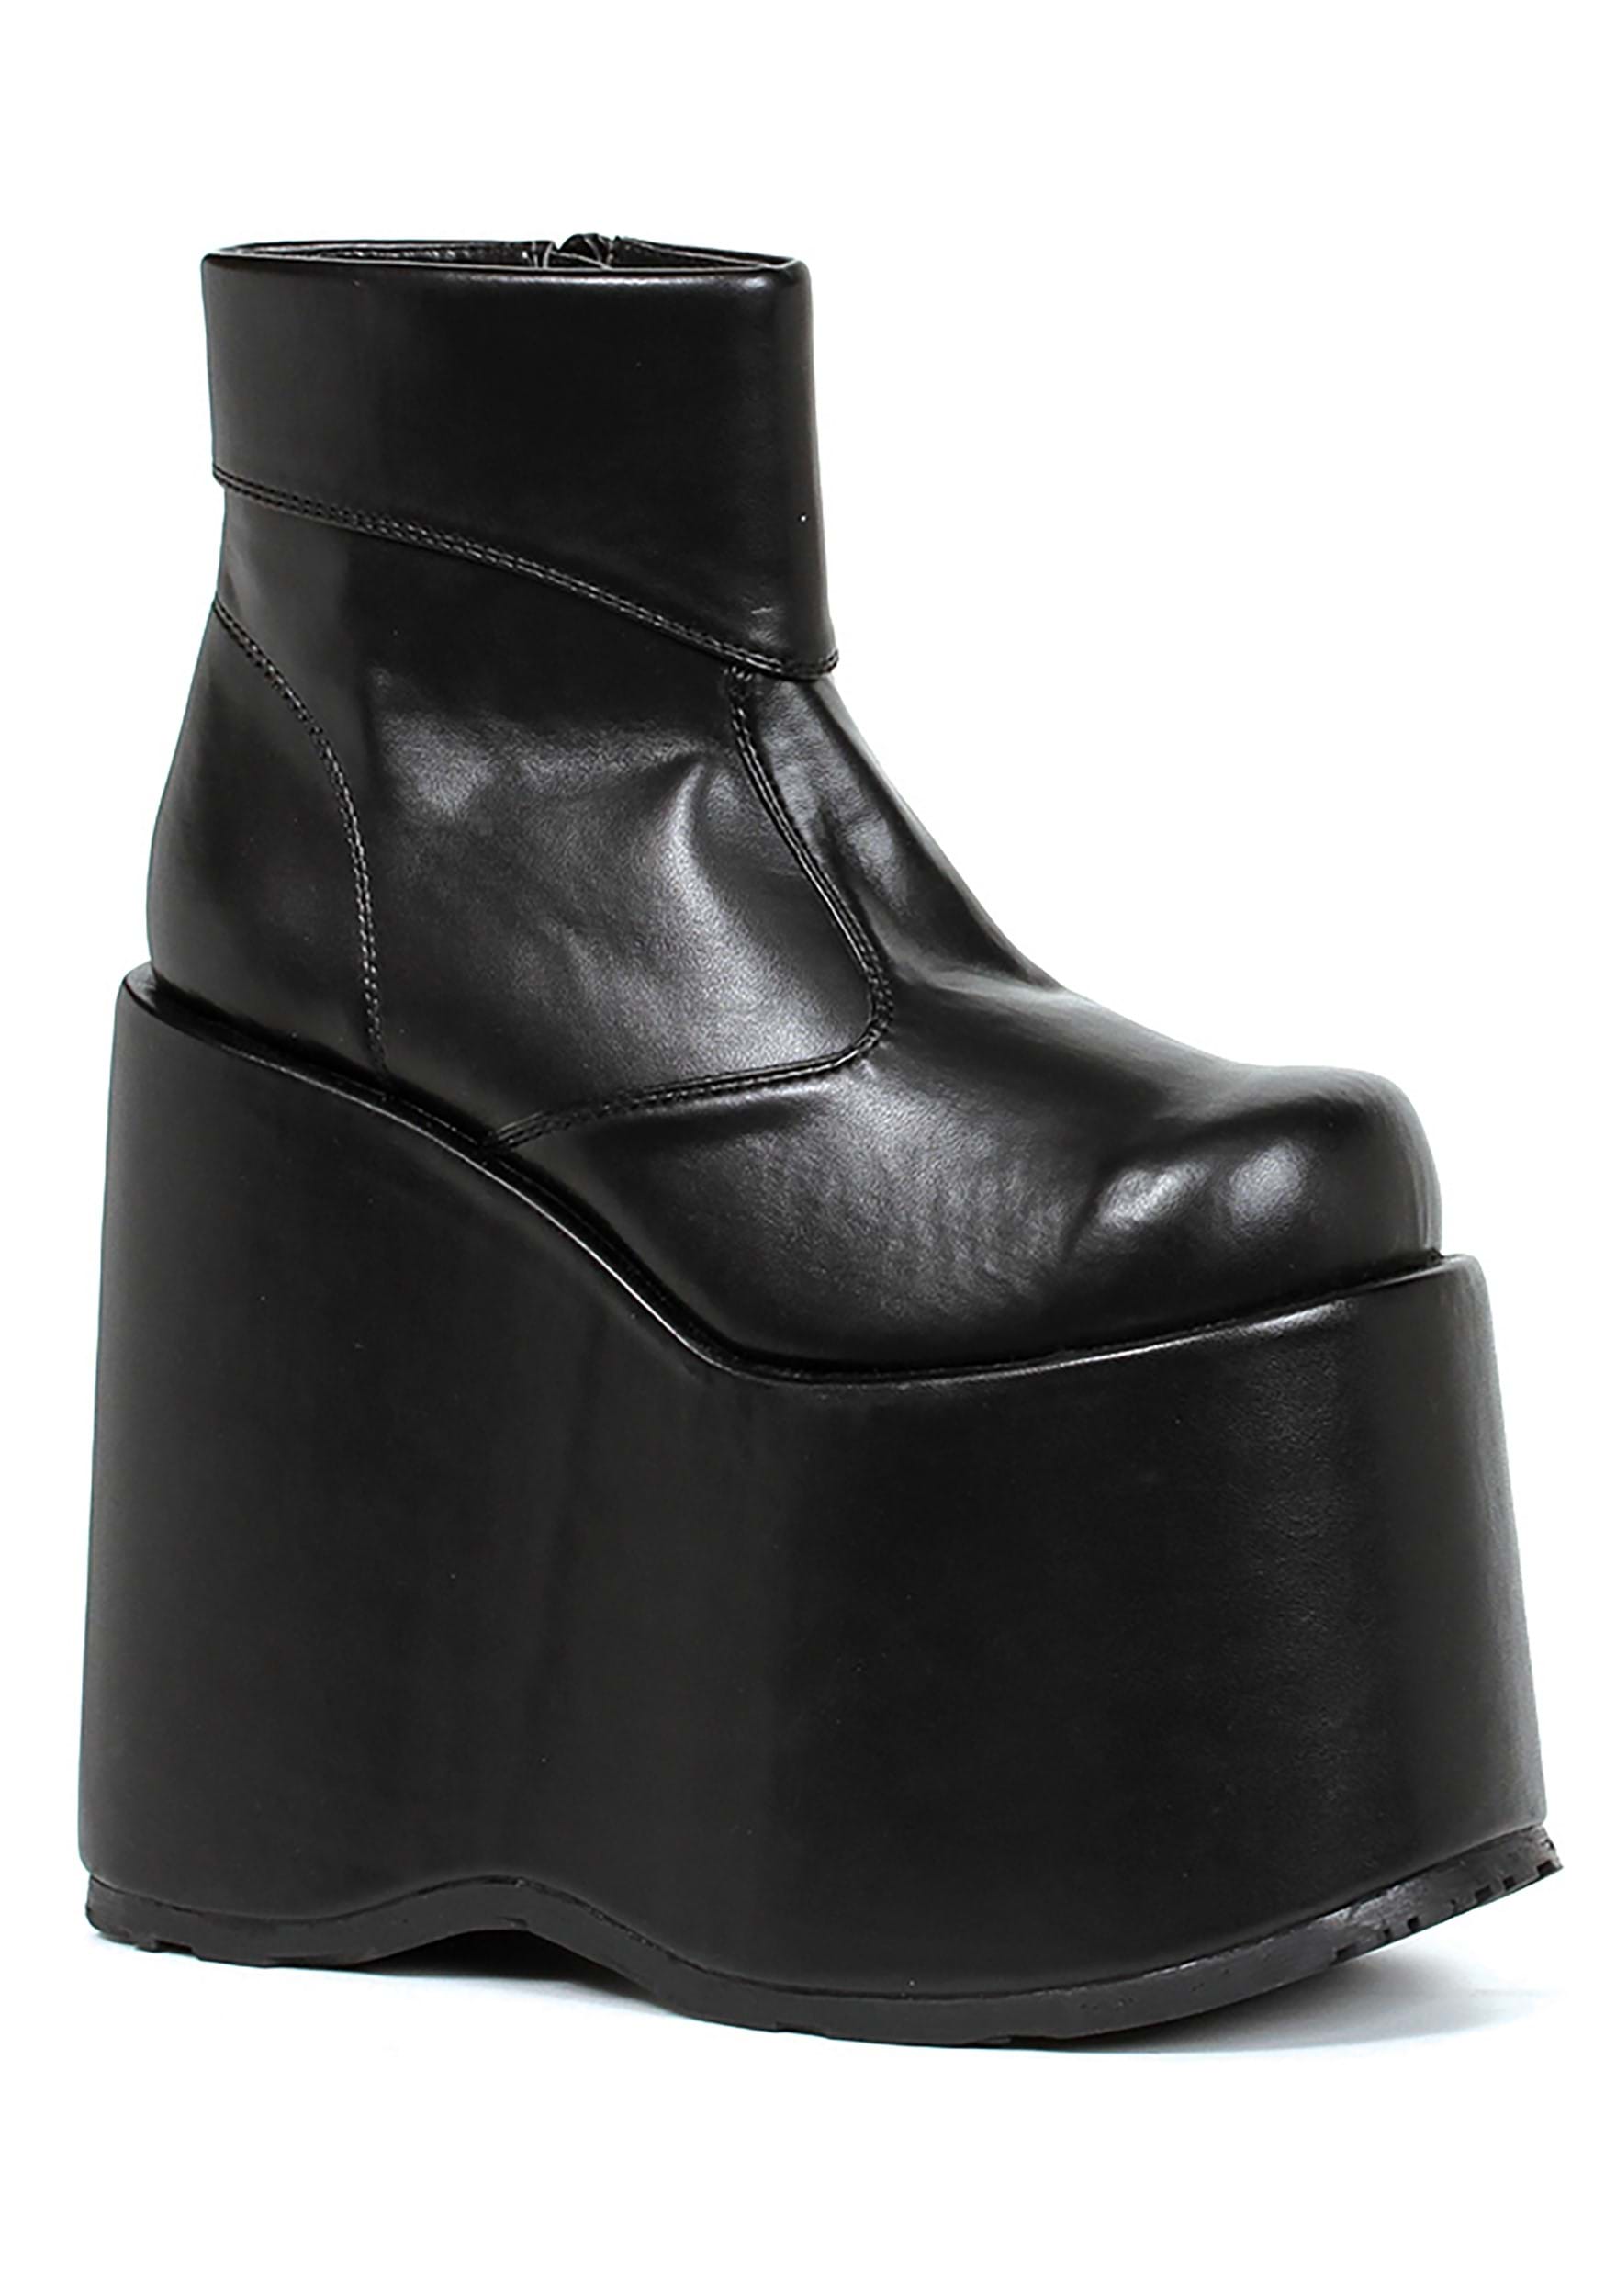 Image of Black Monster Platform Men's Shoes ID EE500FRANKBK-S